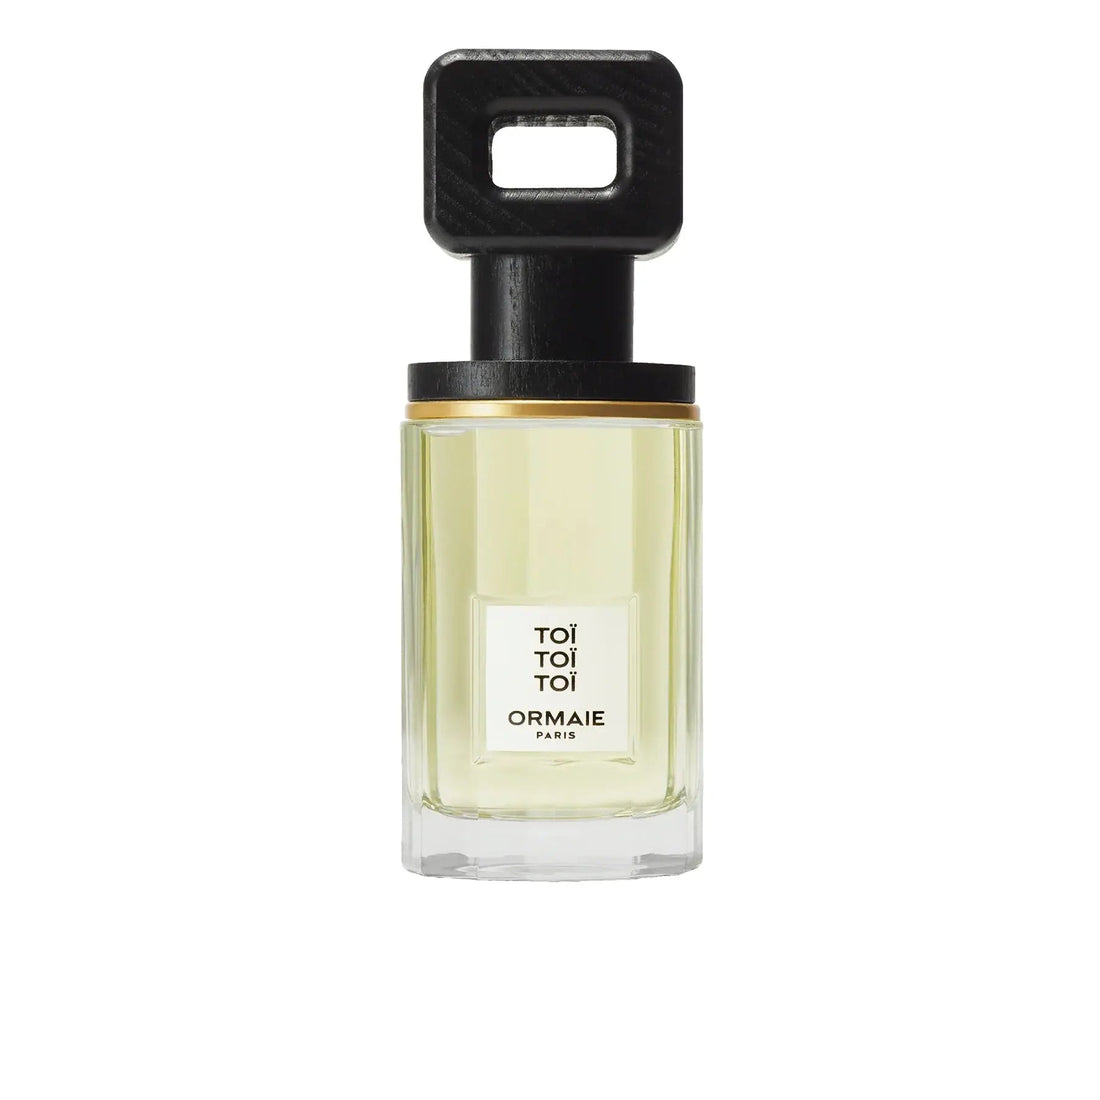 Toi Toi Toi eau de parfum - 100 ml